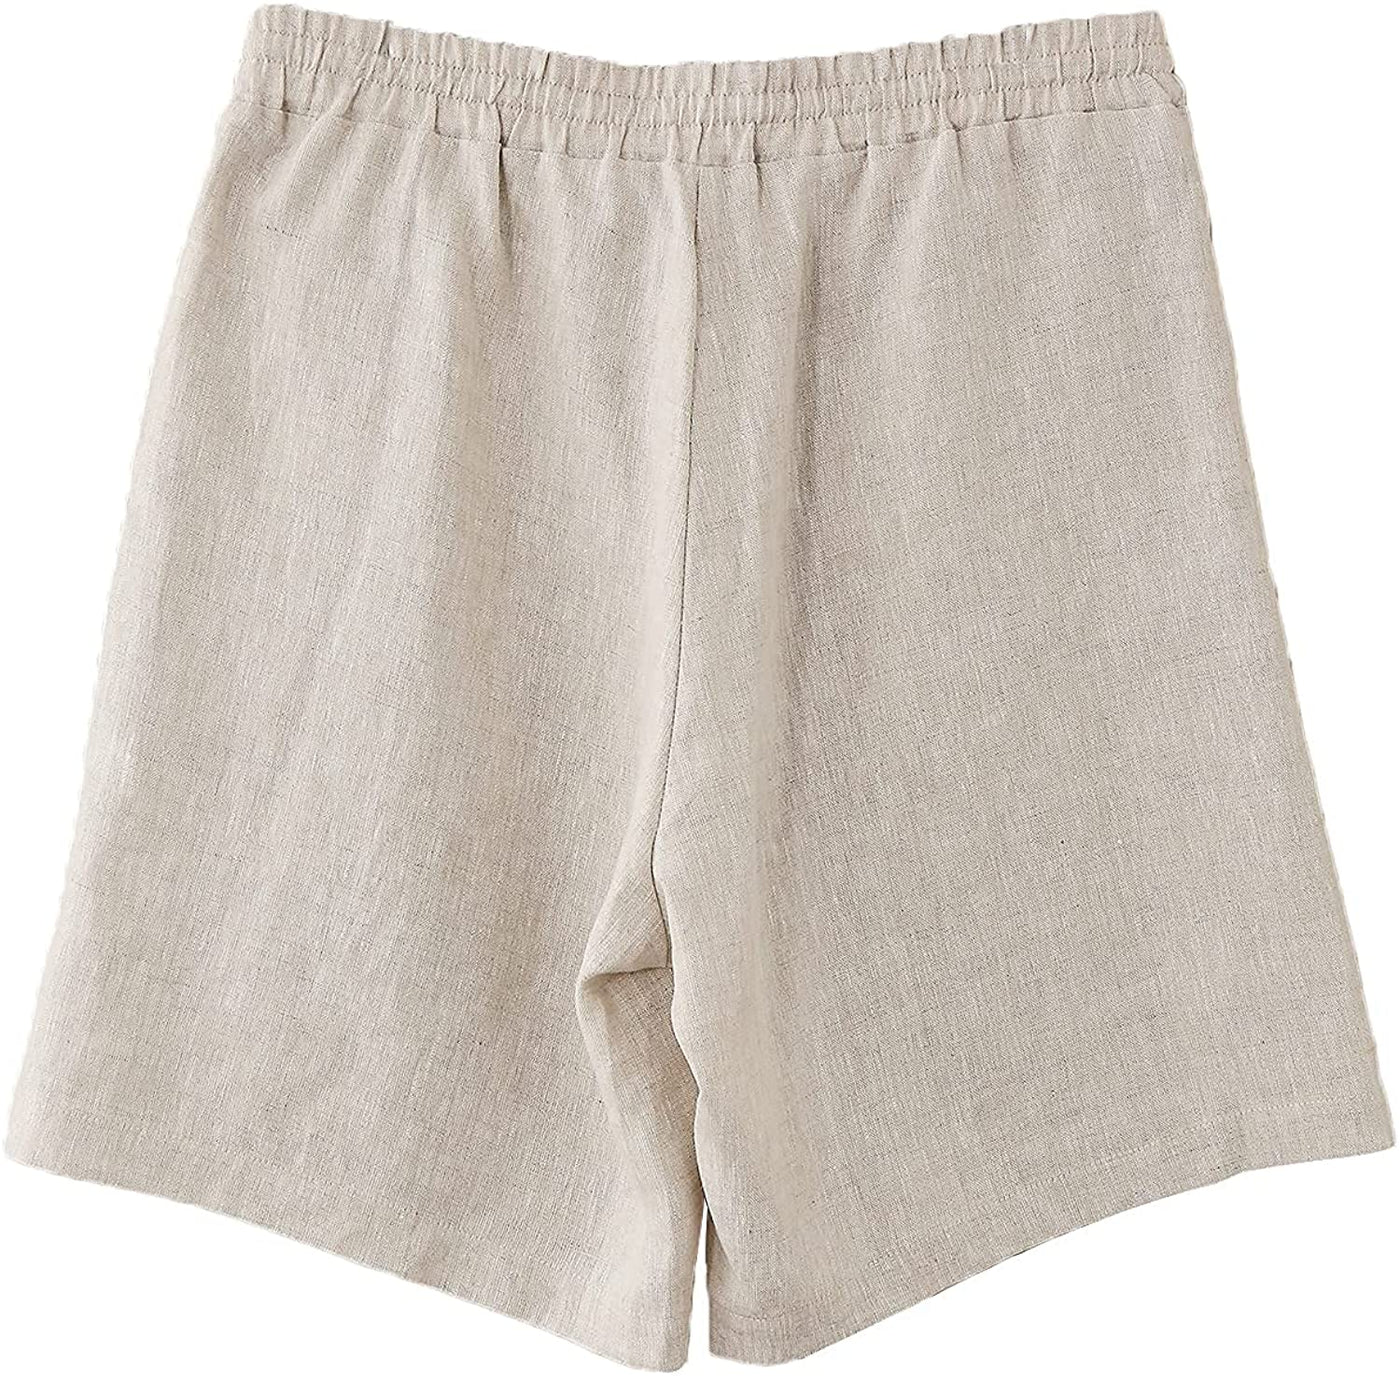 𝒩𝒯𝒢 ღ𝓃𝓁𝒾𝓃𝑒 Linen Pocket Short For Men